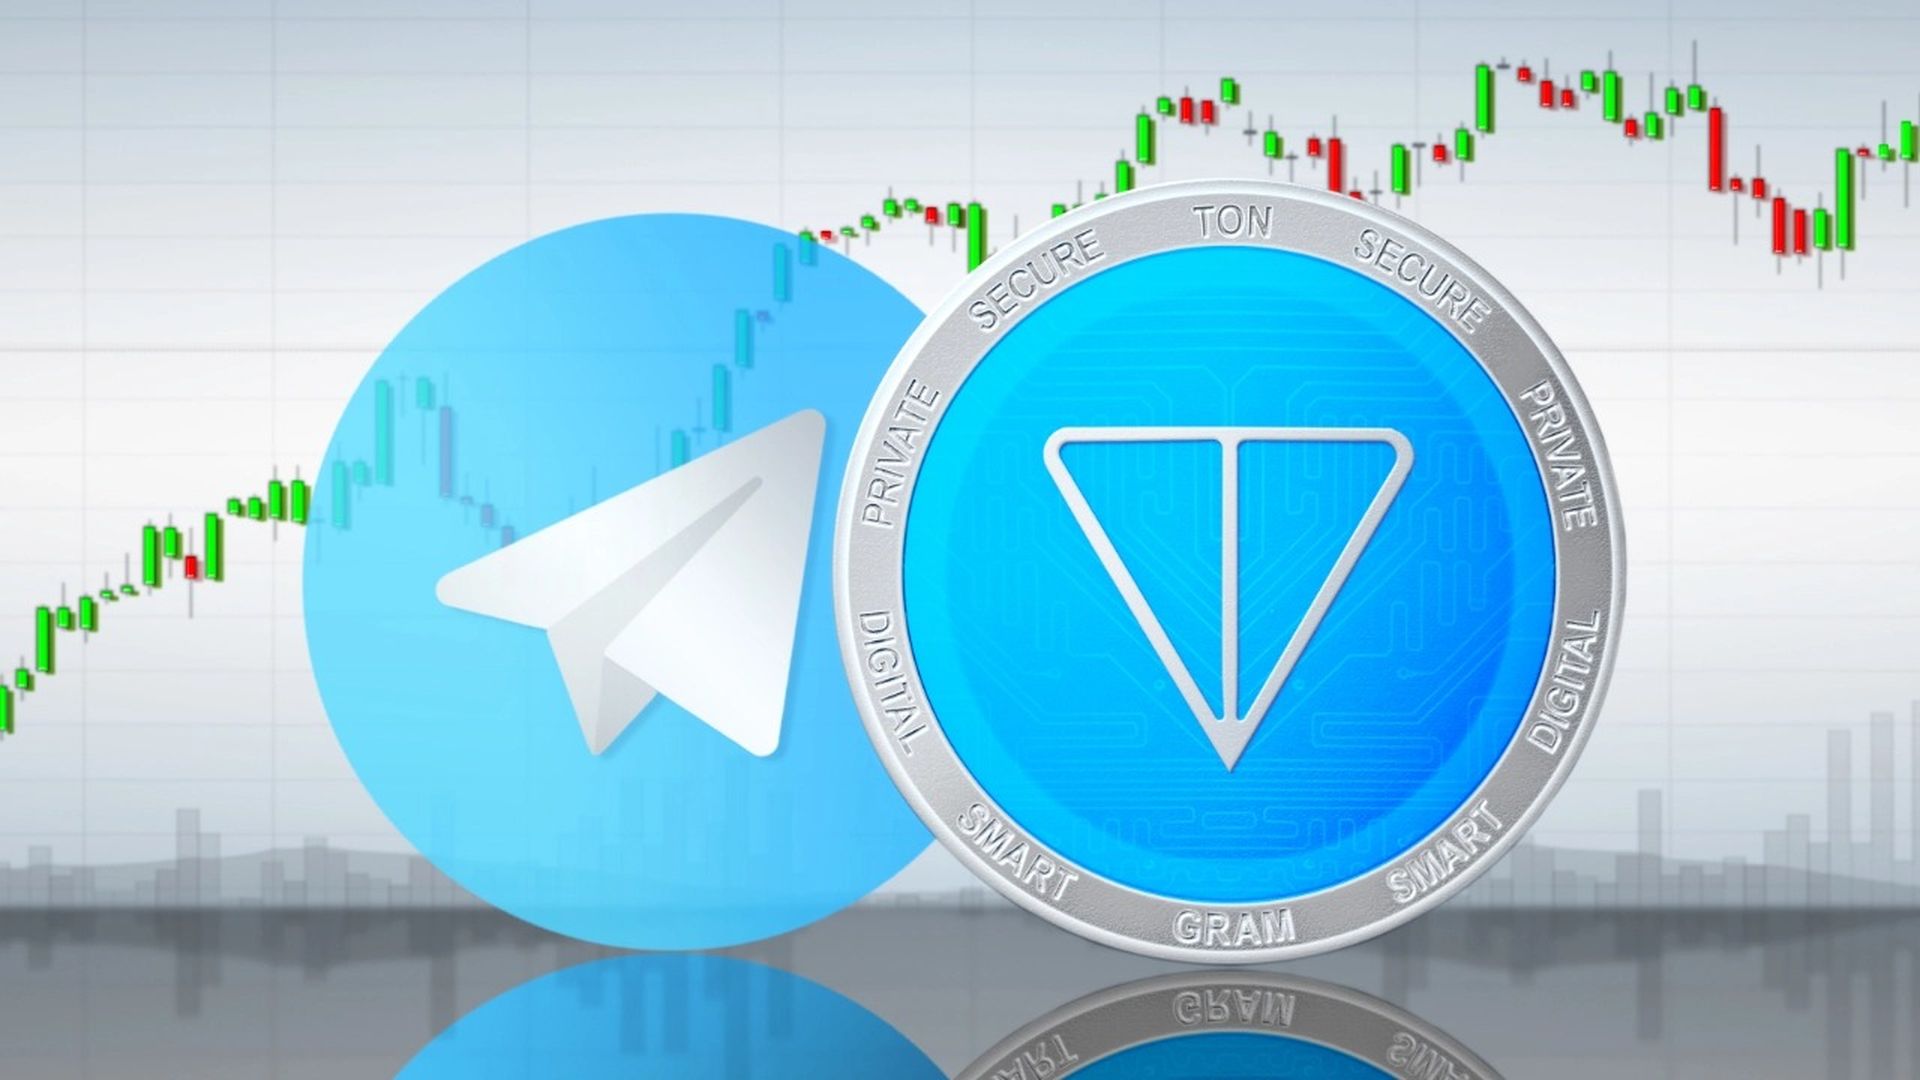 Les utilisateurs de Telegram peuvent désormais échanger des TON en utilisant la plateforme de messagerie